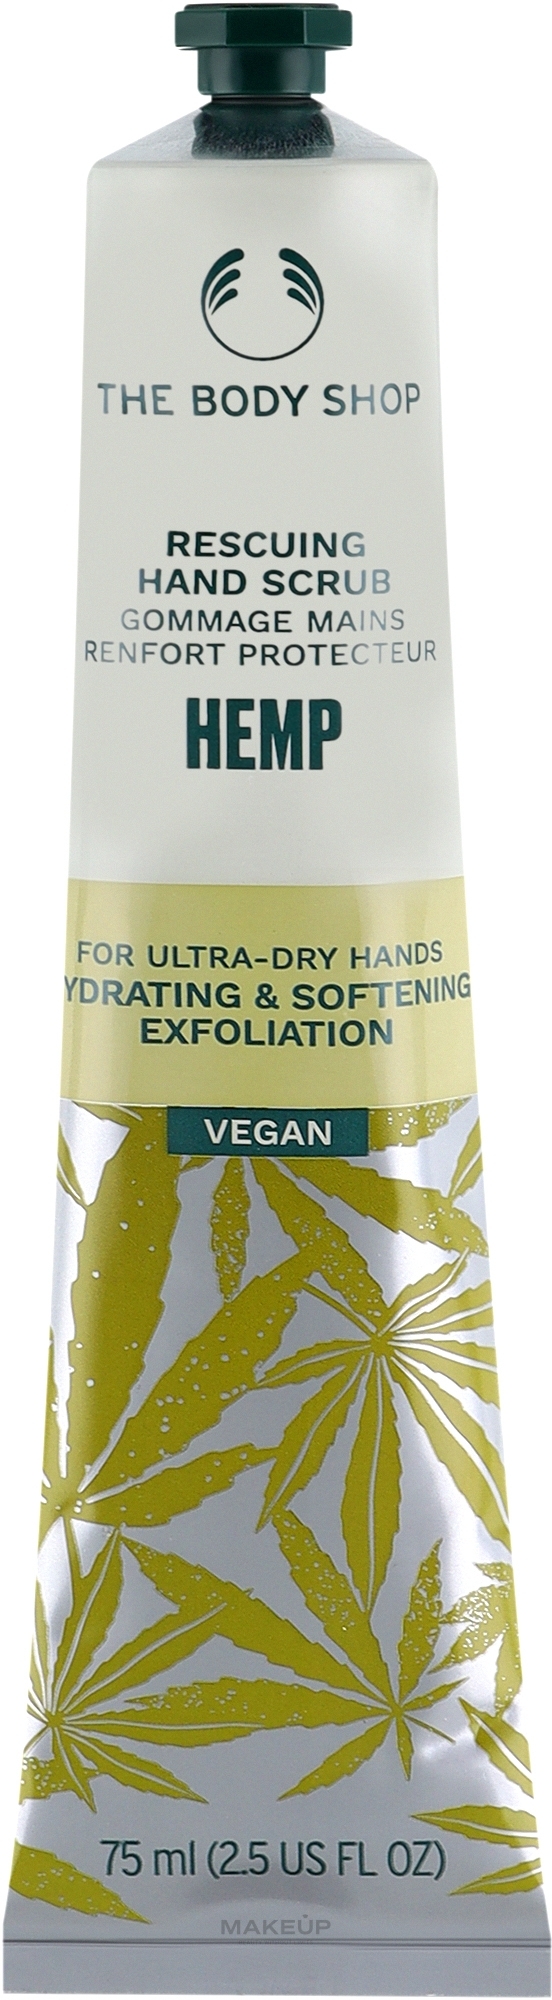 Hemp Hand Scrub - The Body Shop Hemp Rescuing Hand Scrub — photo 75 ml